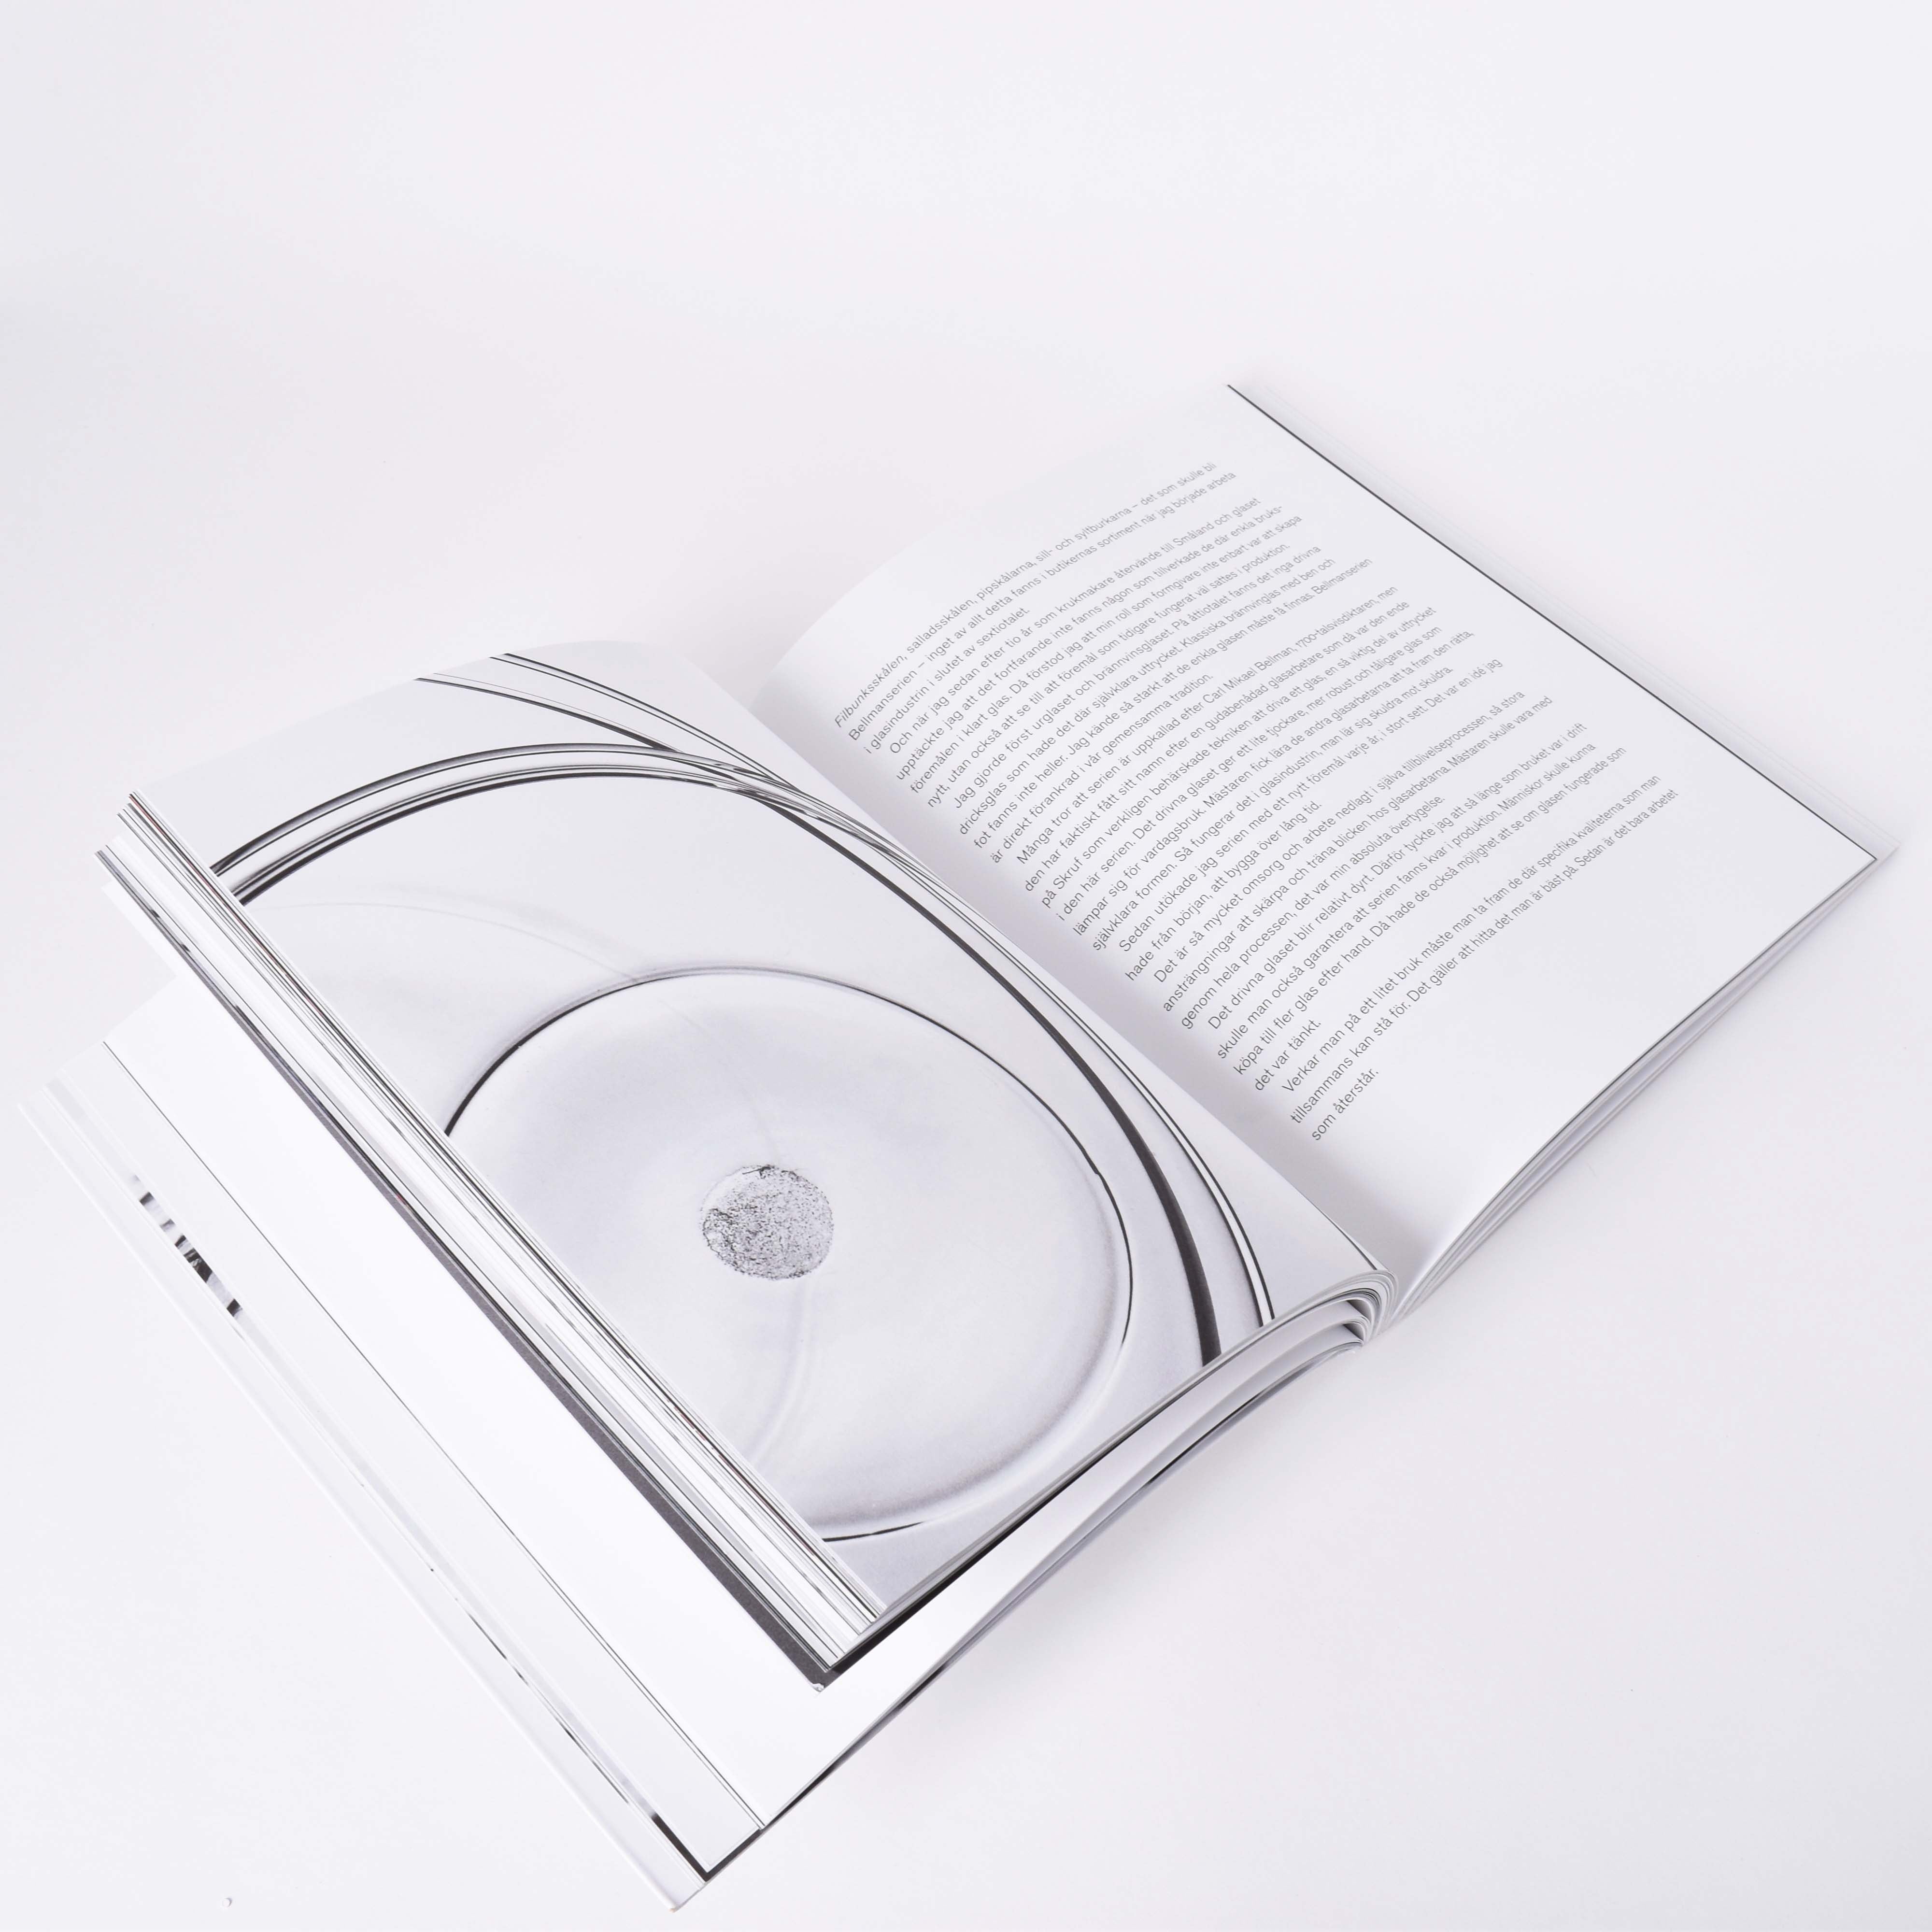 Insida i boken Ingegerd råman med mönster från hennes design